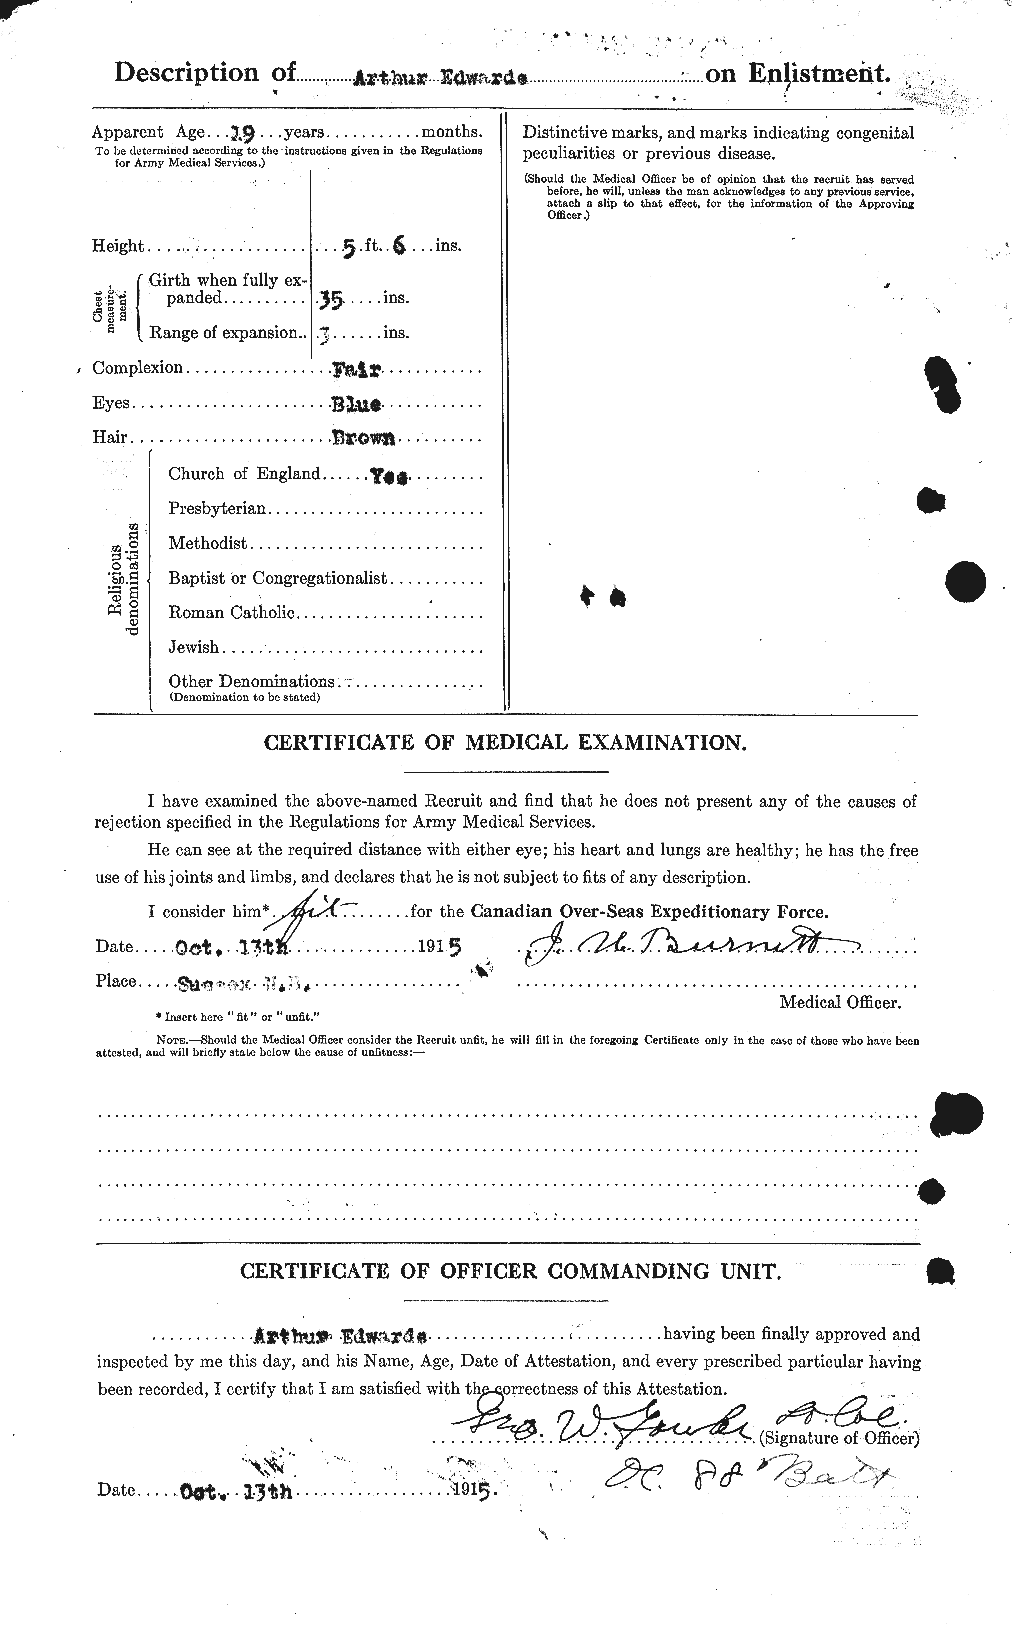 Dossiers du Personnel de la Première Guerre mondiale - CEC 313129b